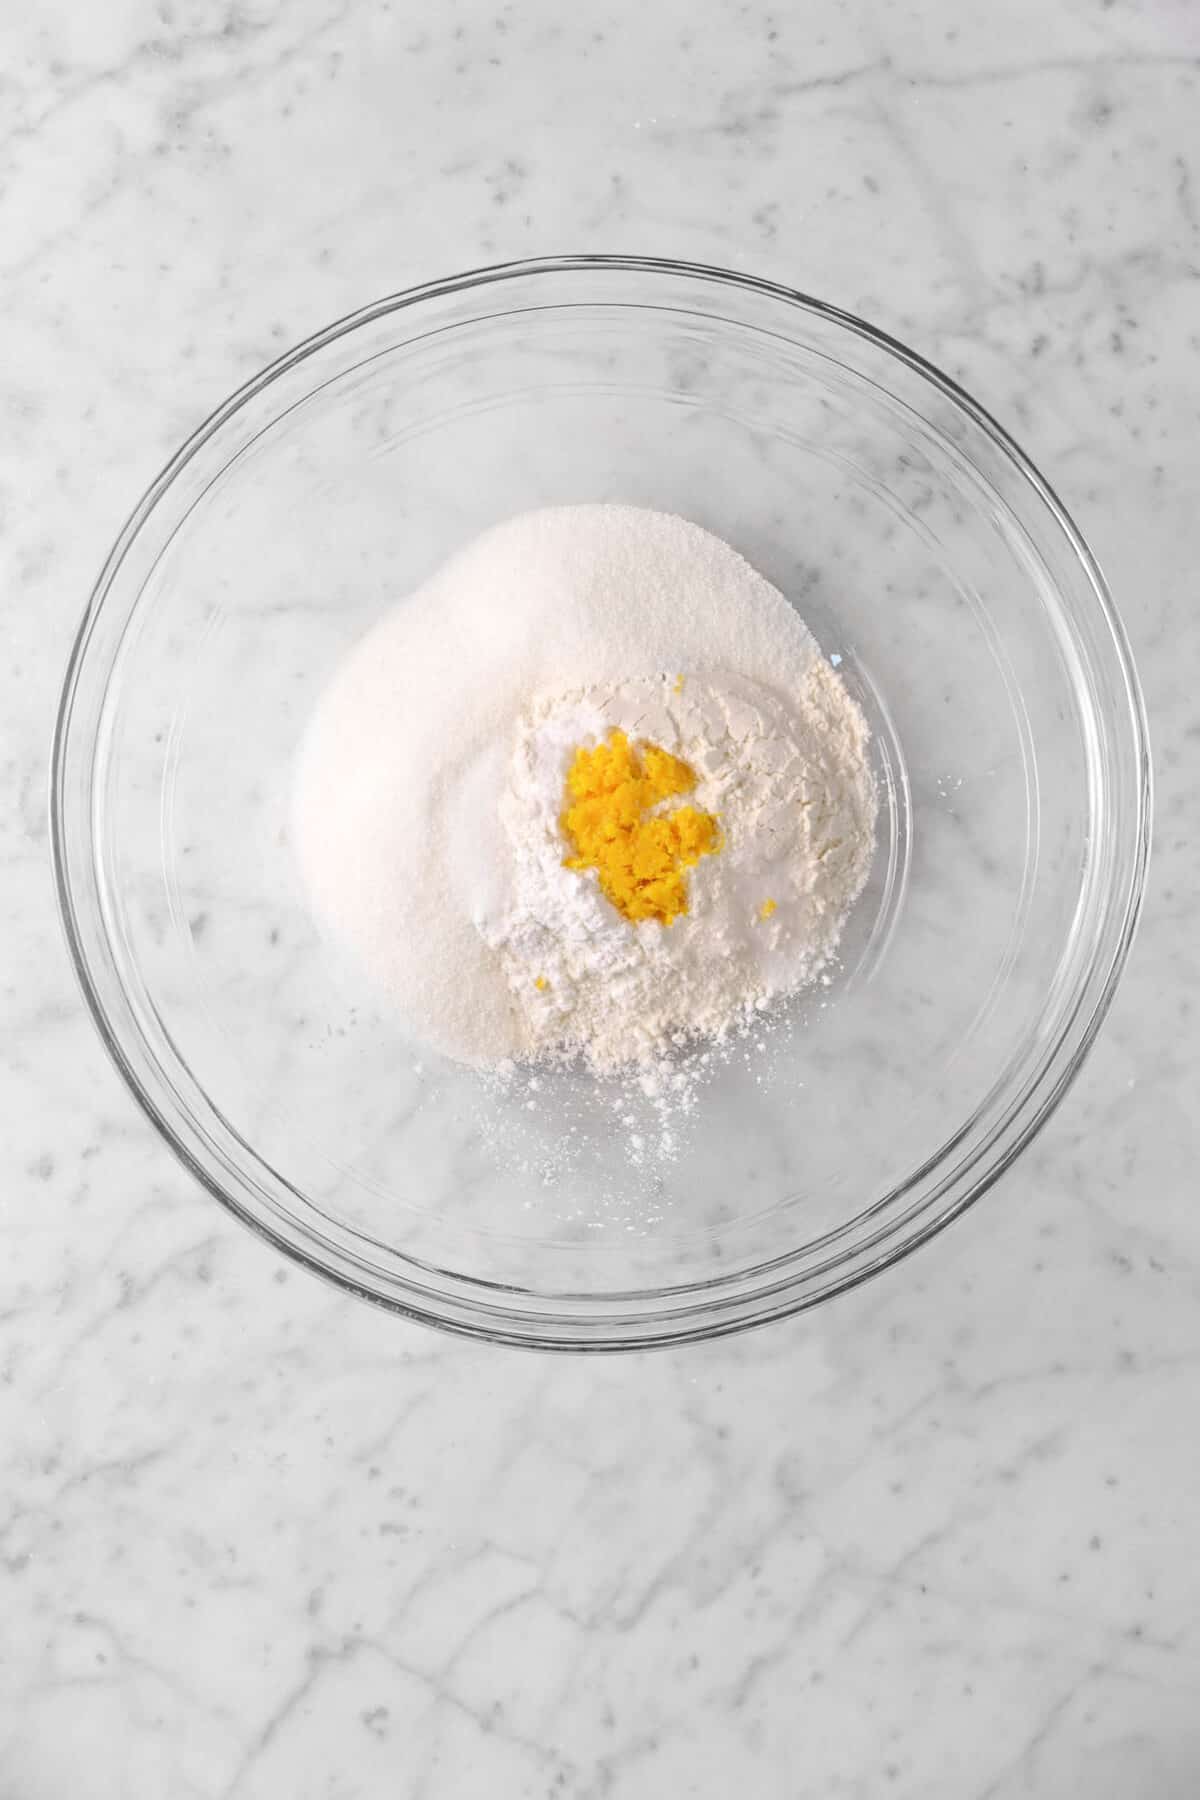 orange zest, sugar, flour, and baking powder in a bowl